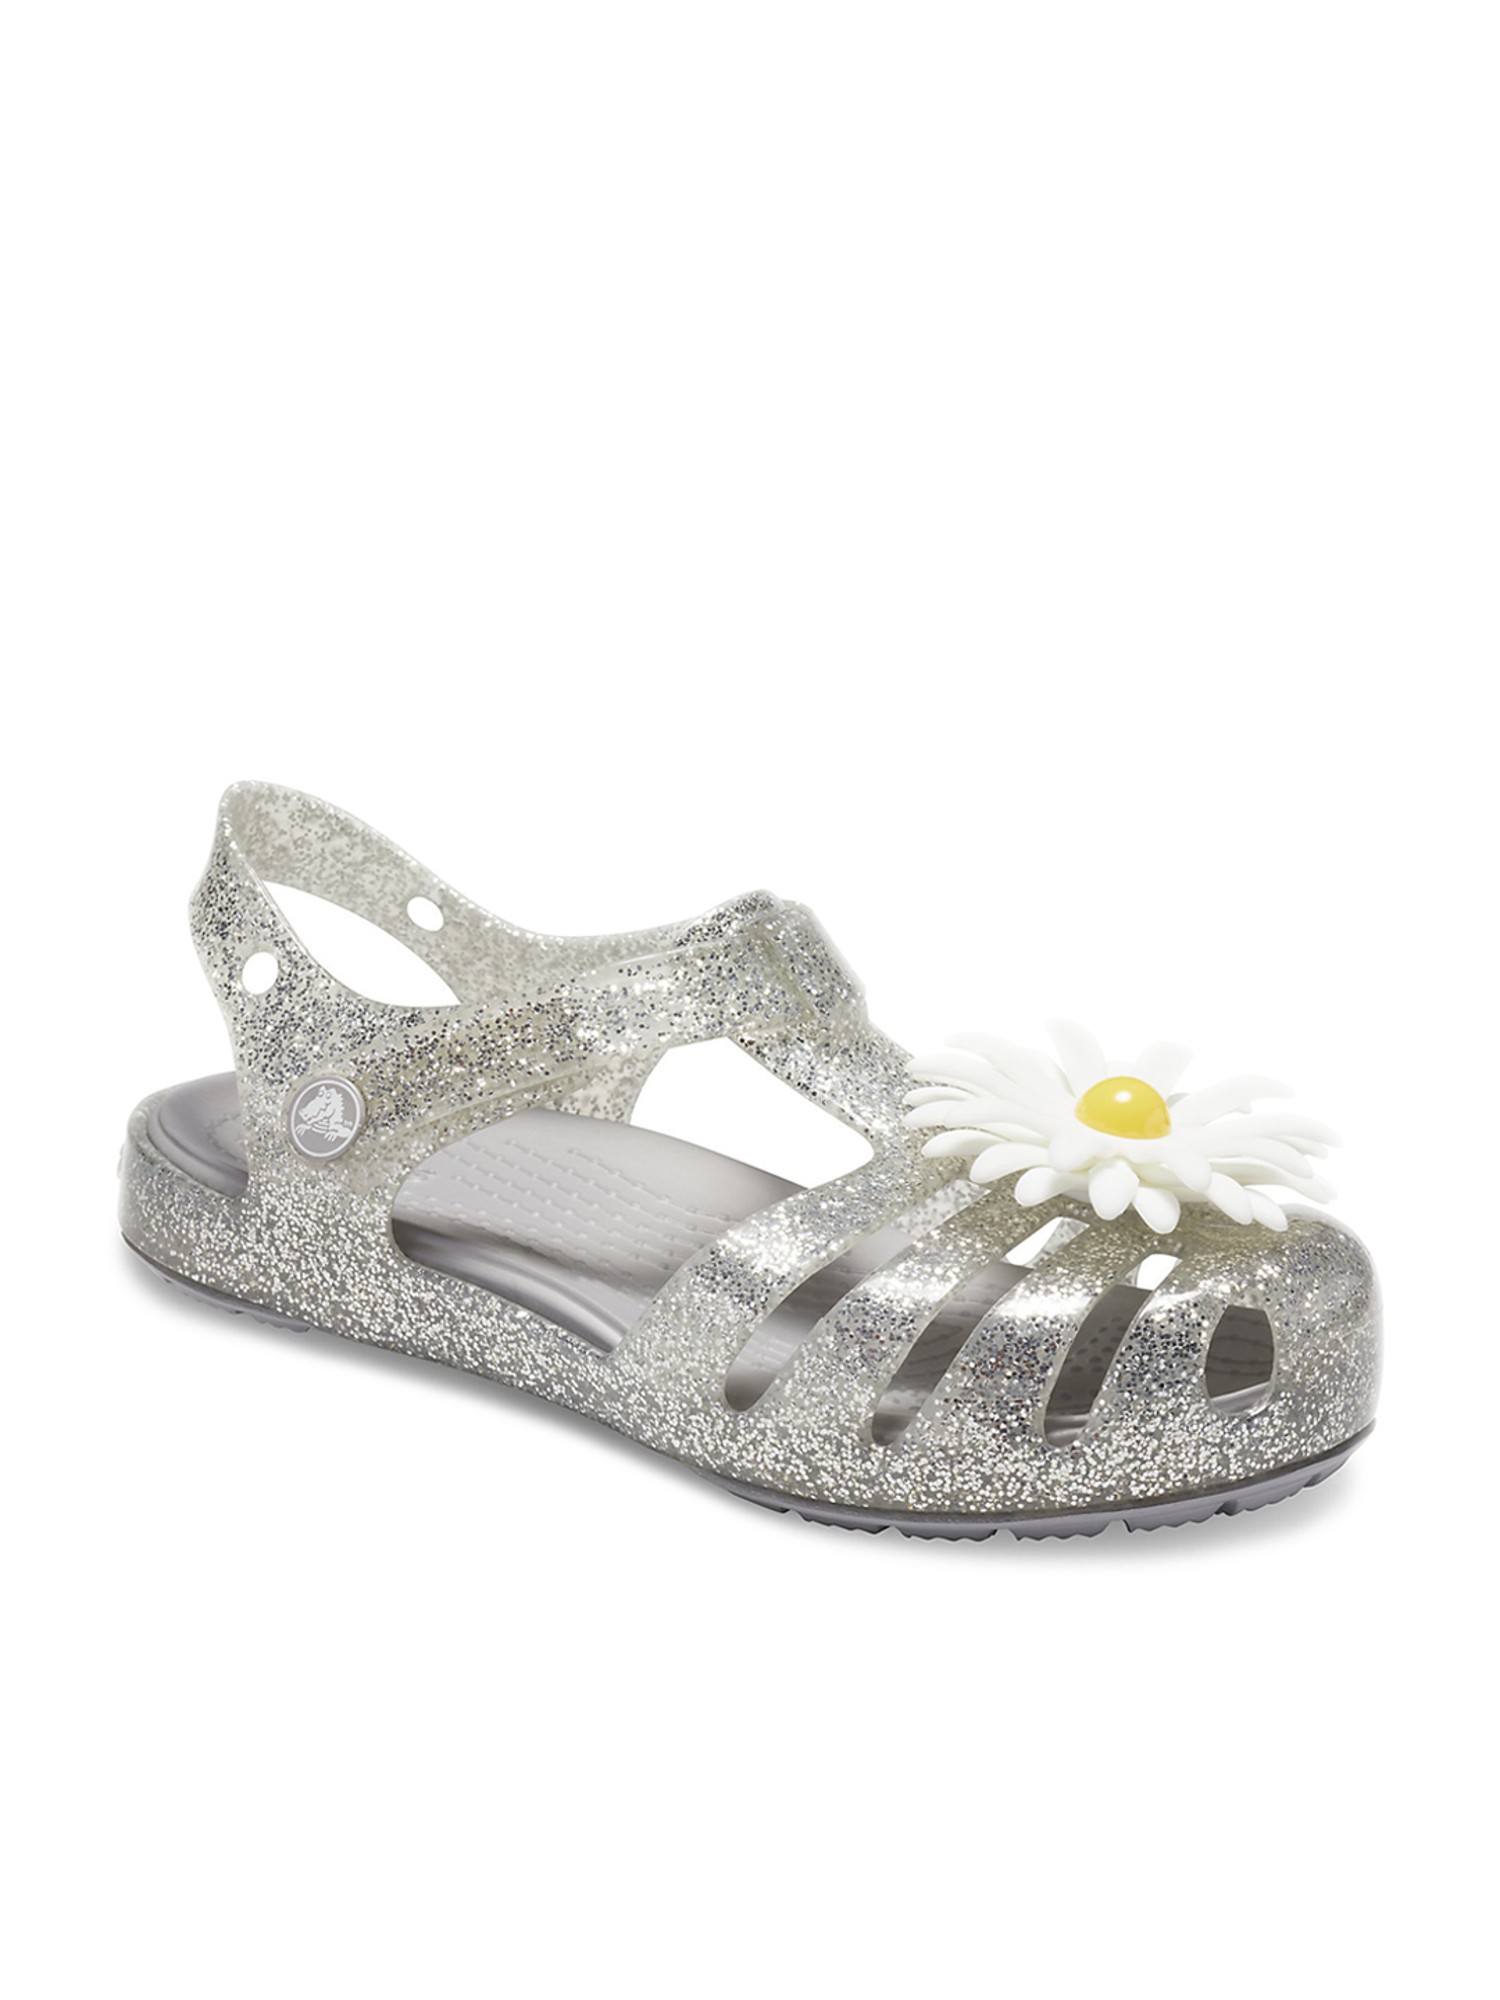 silver crocs sandals